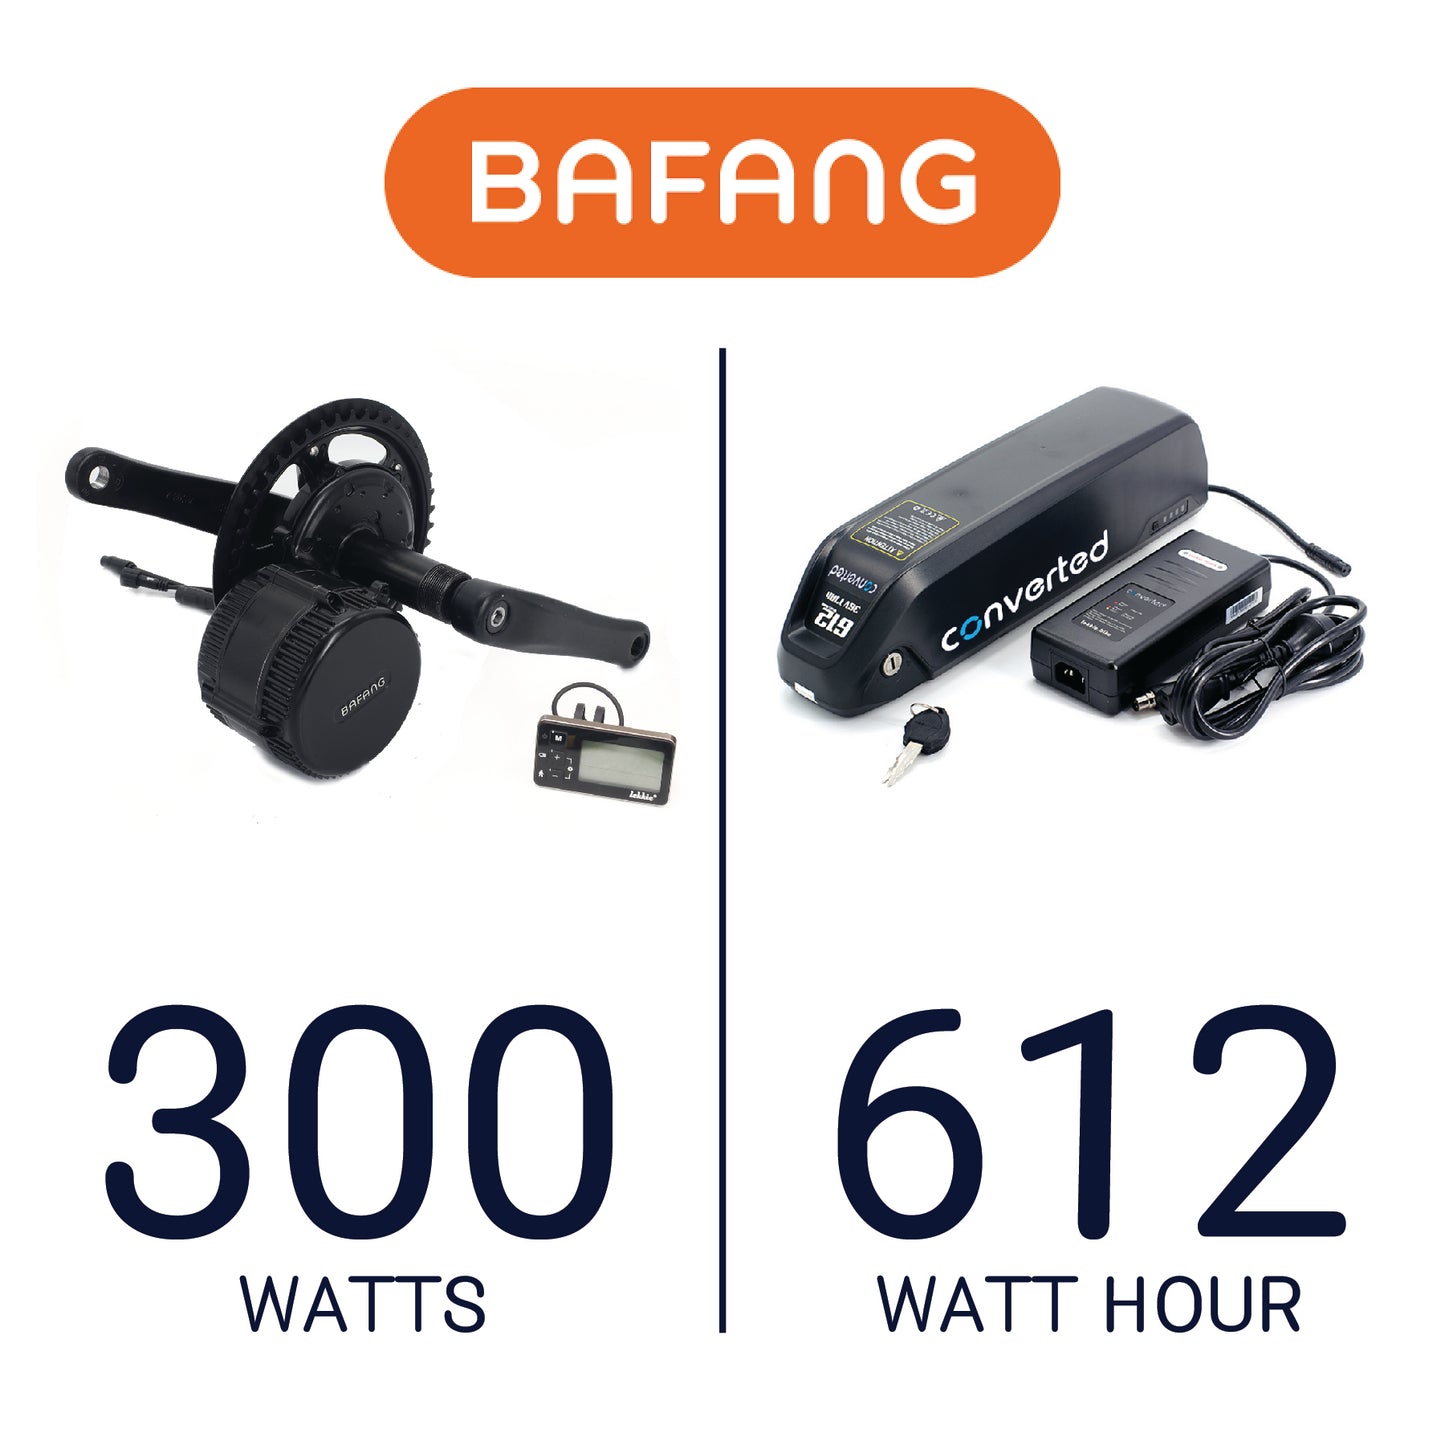 Bafang 300W, 612Wh Conversion Kit